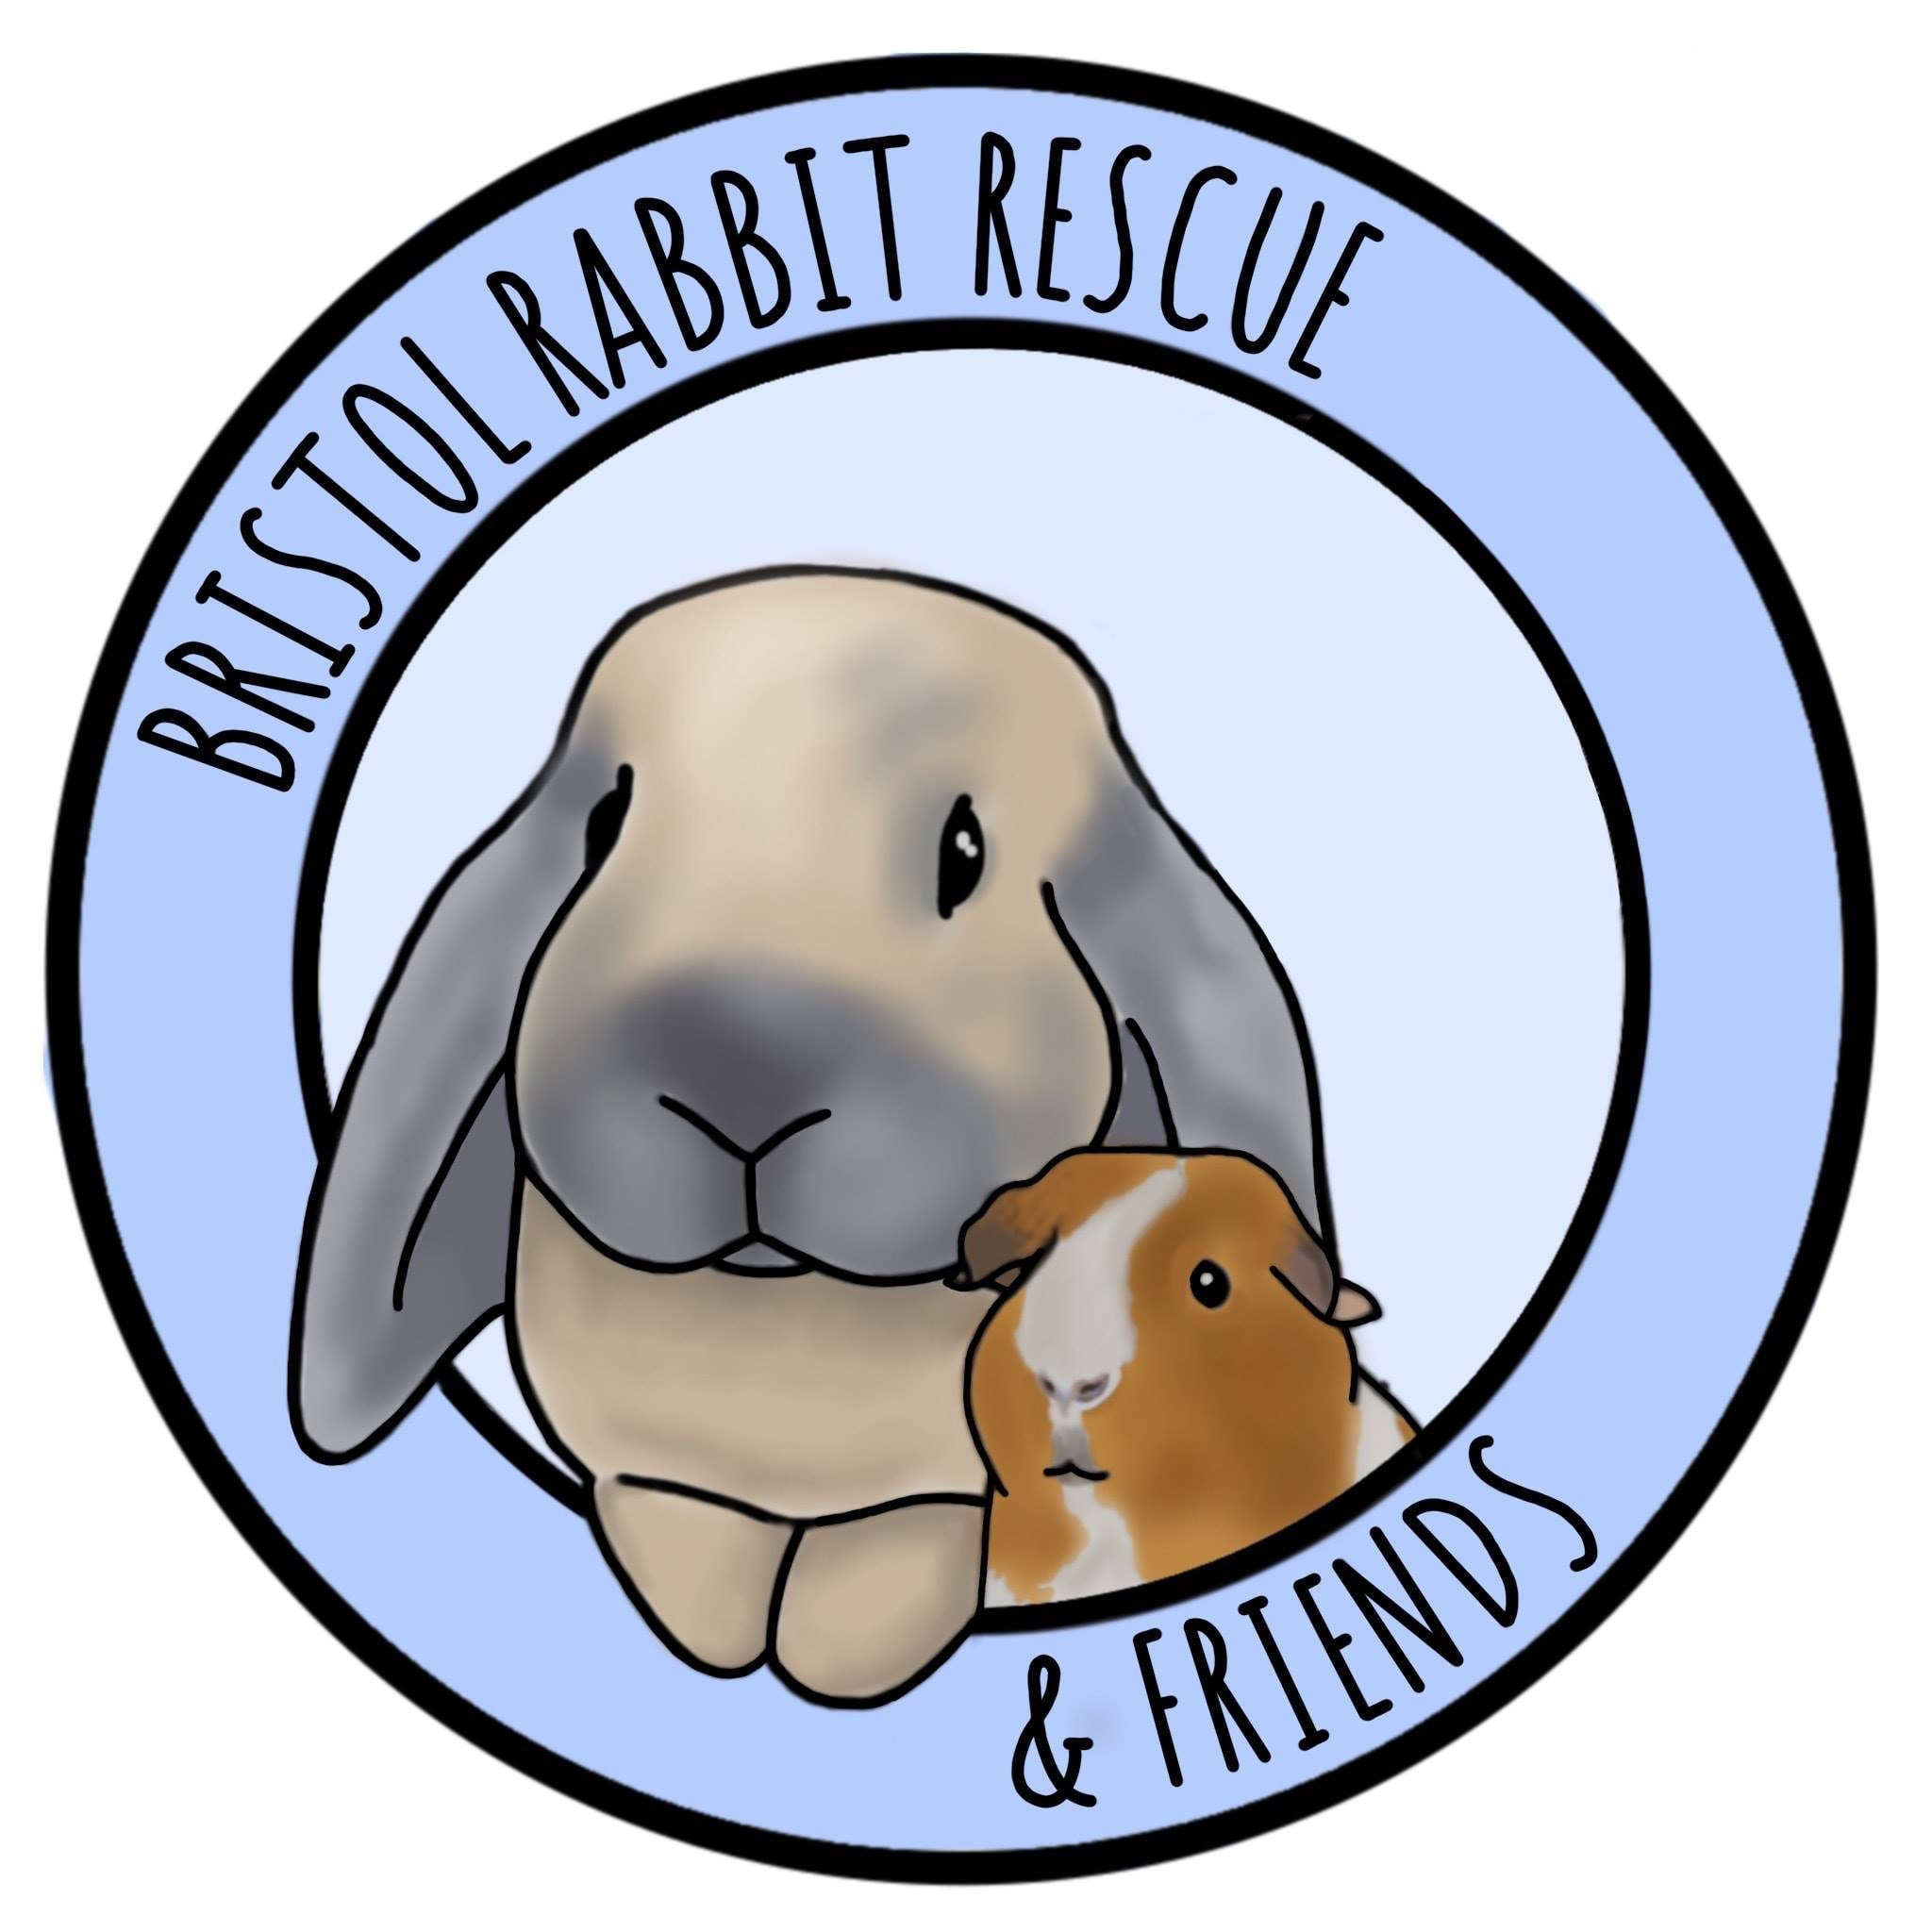 Bristol Rabbit Rescue And Friends 